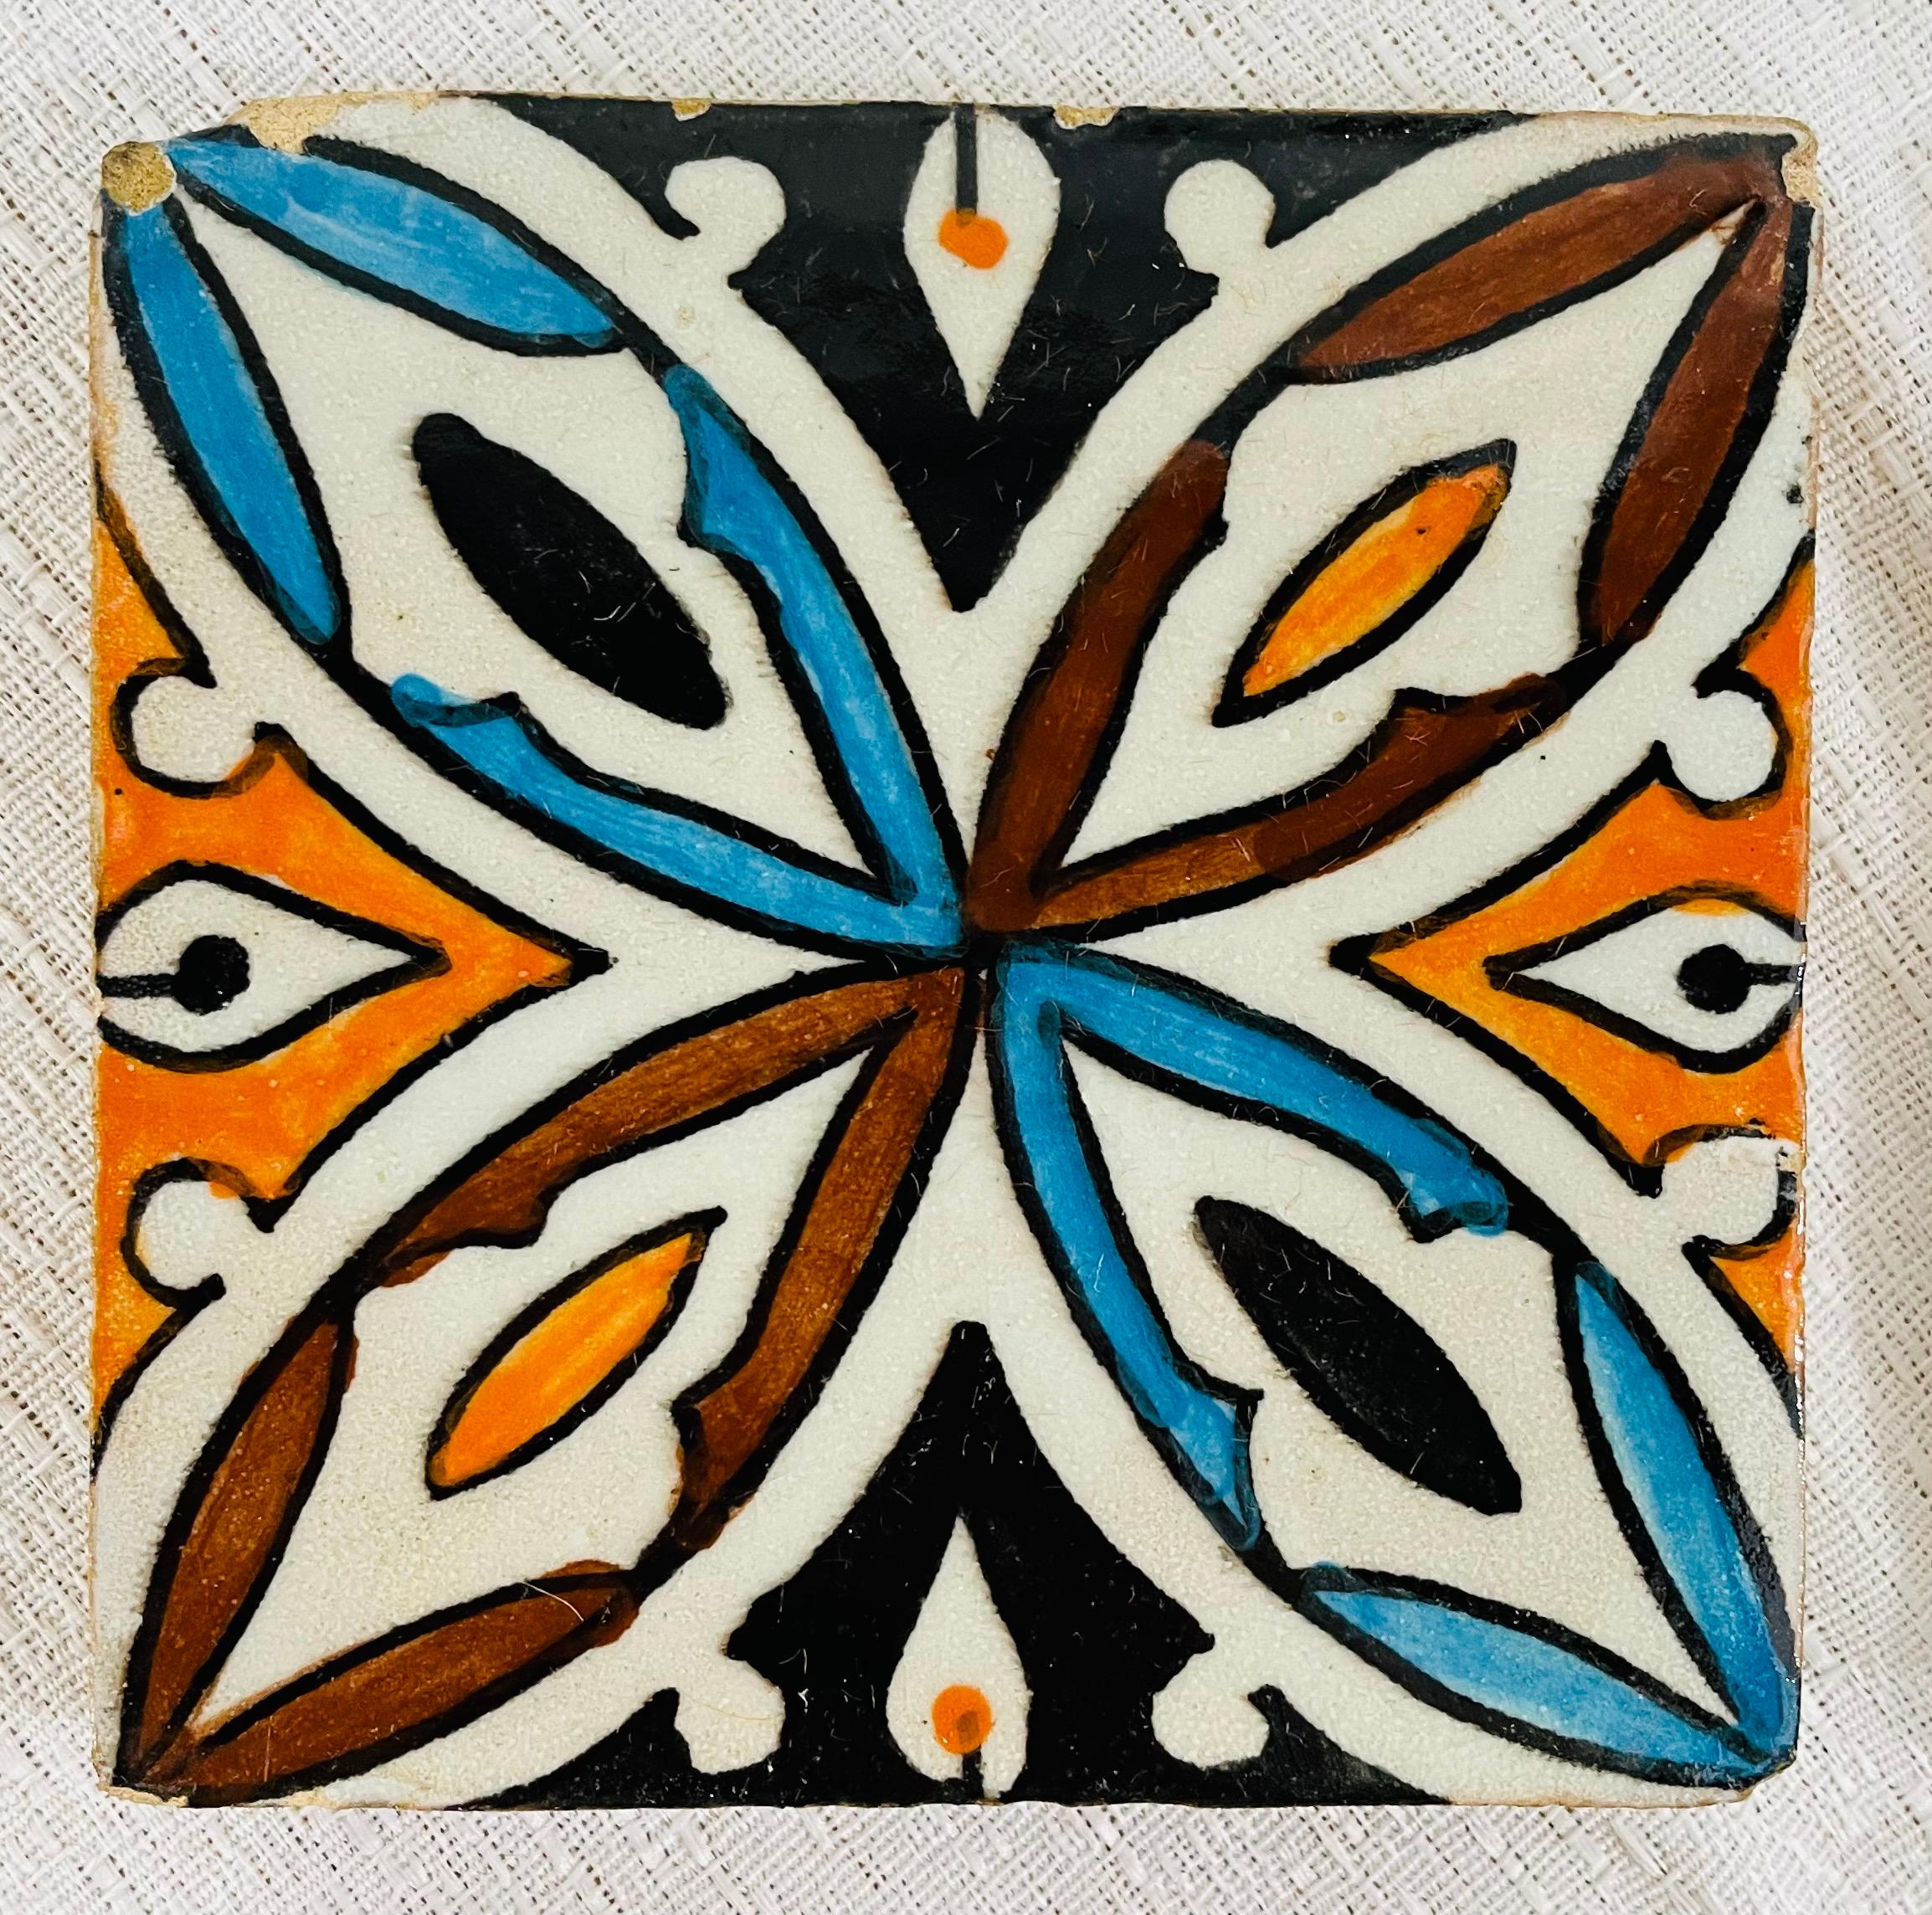 Un ensemble de quatre sous-verres ou carreaux marocains en céramique peints à la main présentant un joli motif géométrique. 

Dimensions : 4